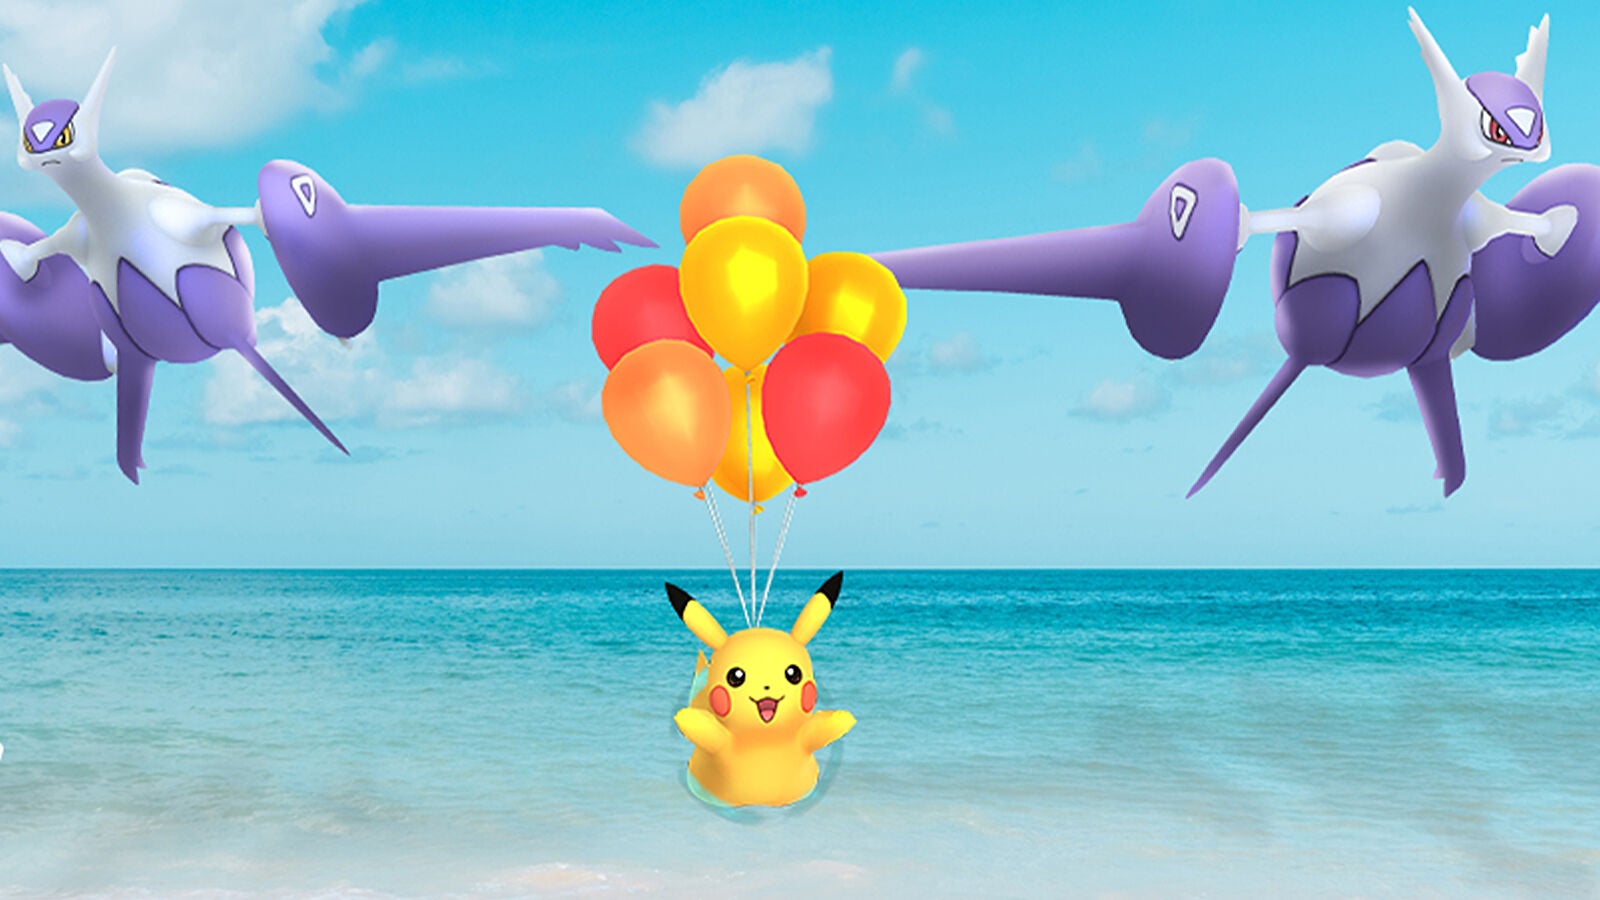 Afbeeldingen van Pokémon Go Electrify the Sky quest en Air Adventures field research opdrachten uitgelegd